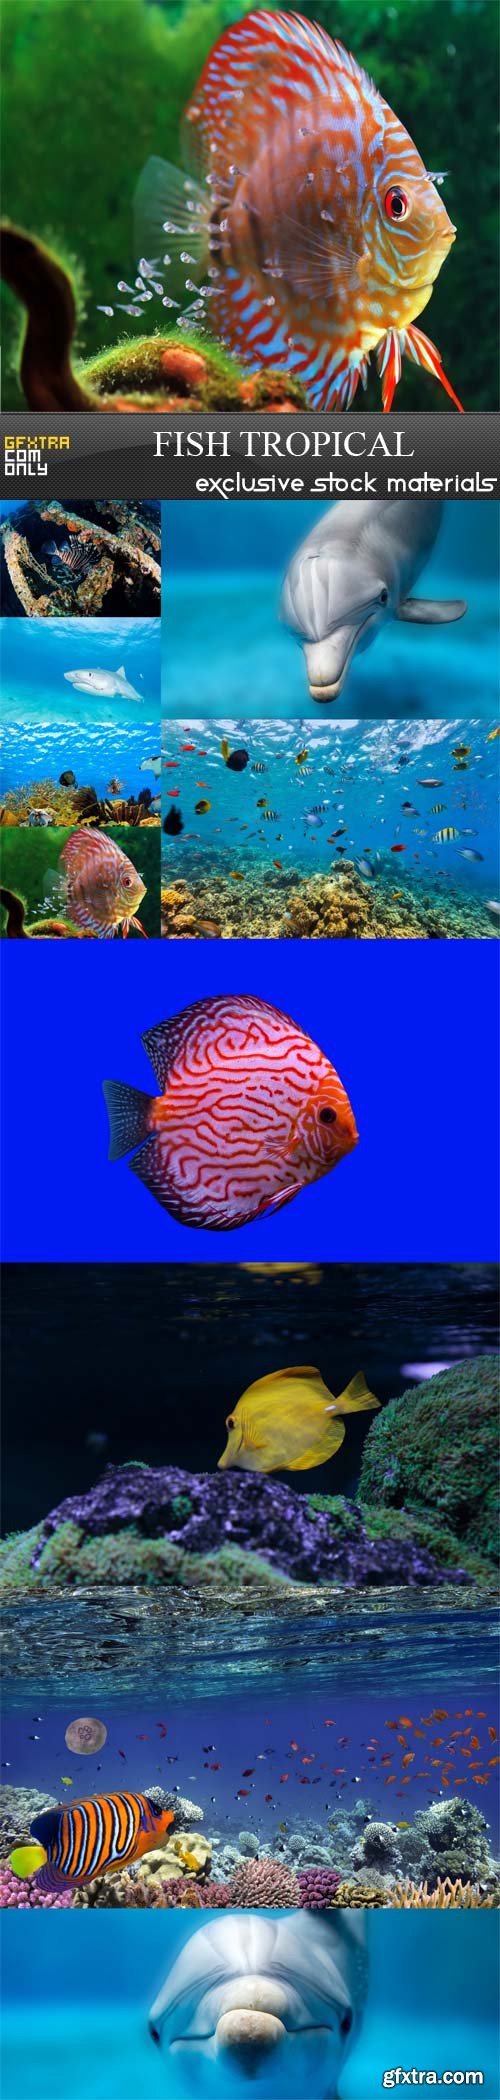 Fish tropical, 10 UHQ JPEG